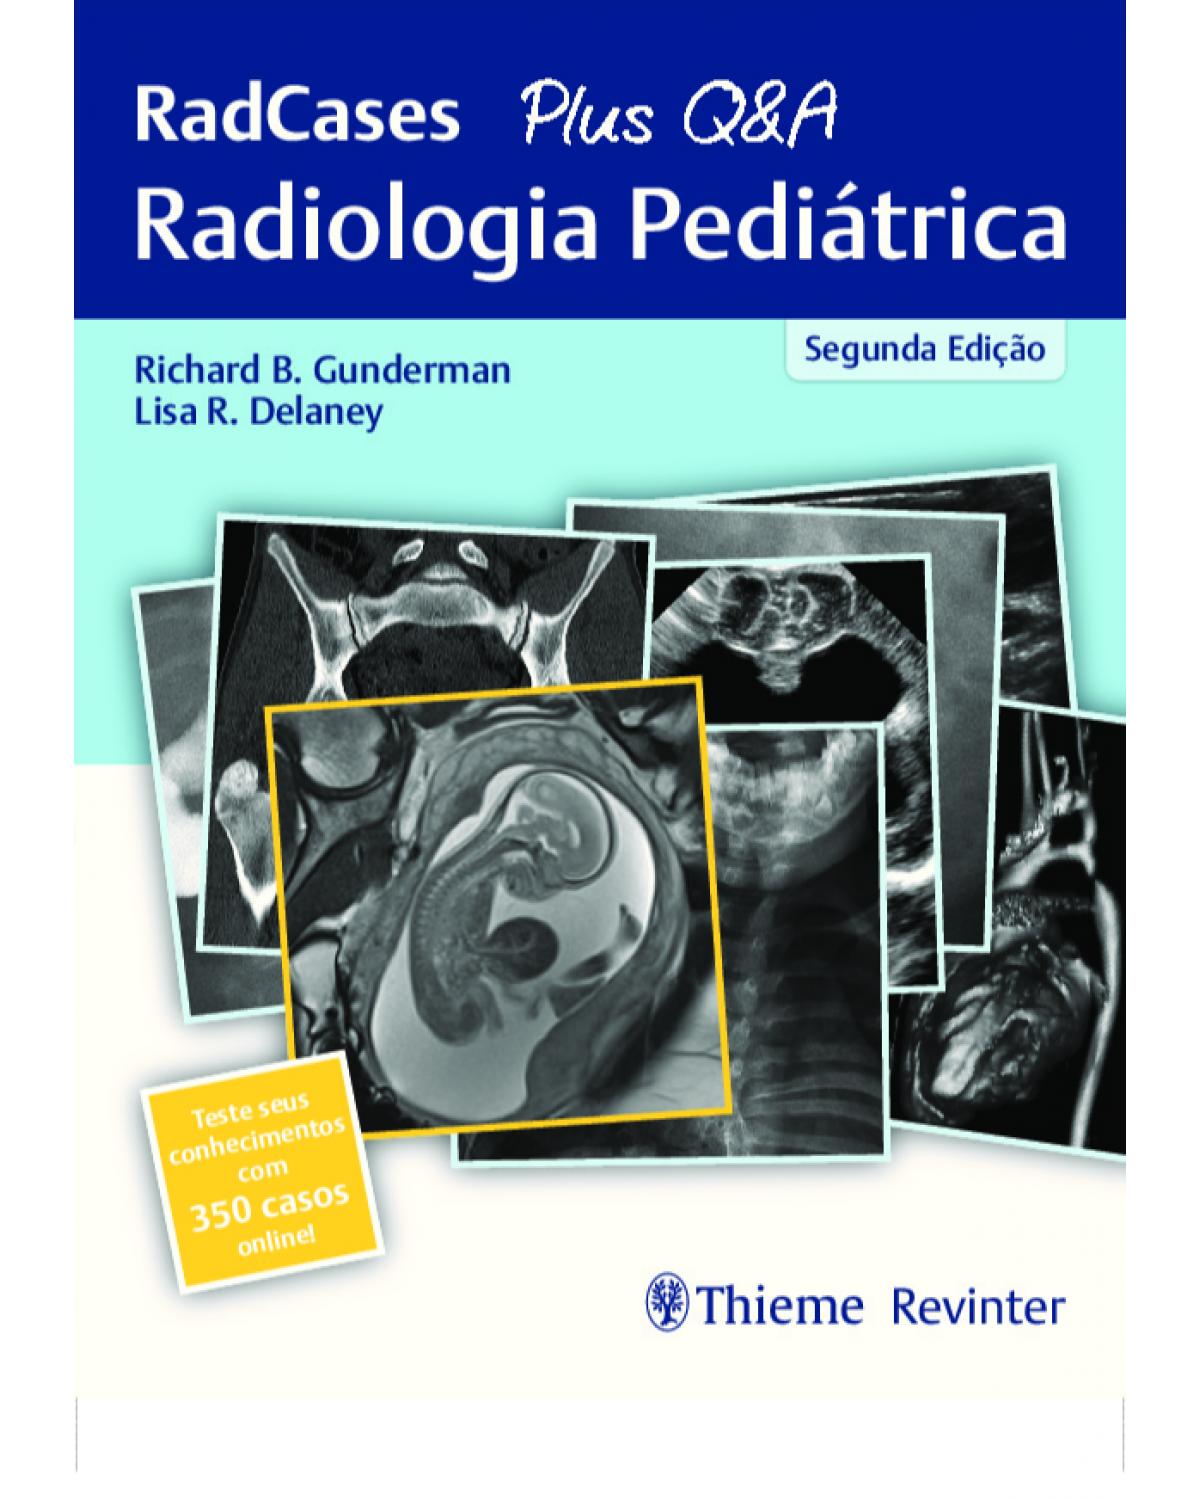 Radiologia pediátrica - RadCases + Q&A - 2ª Edição | 2019